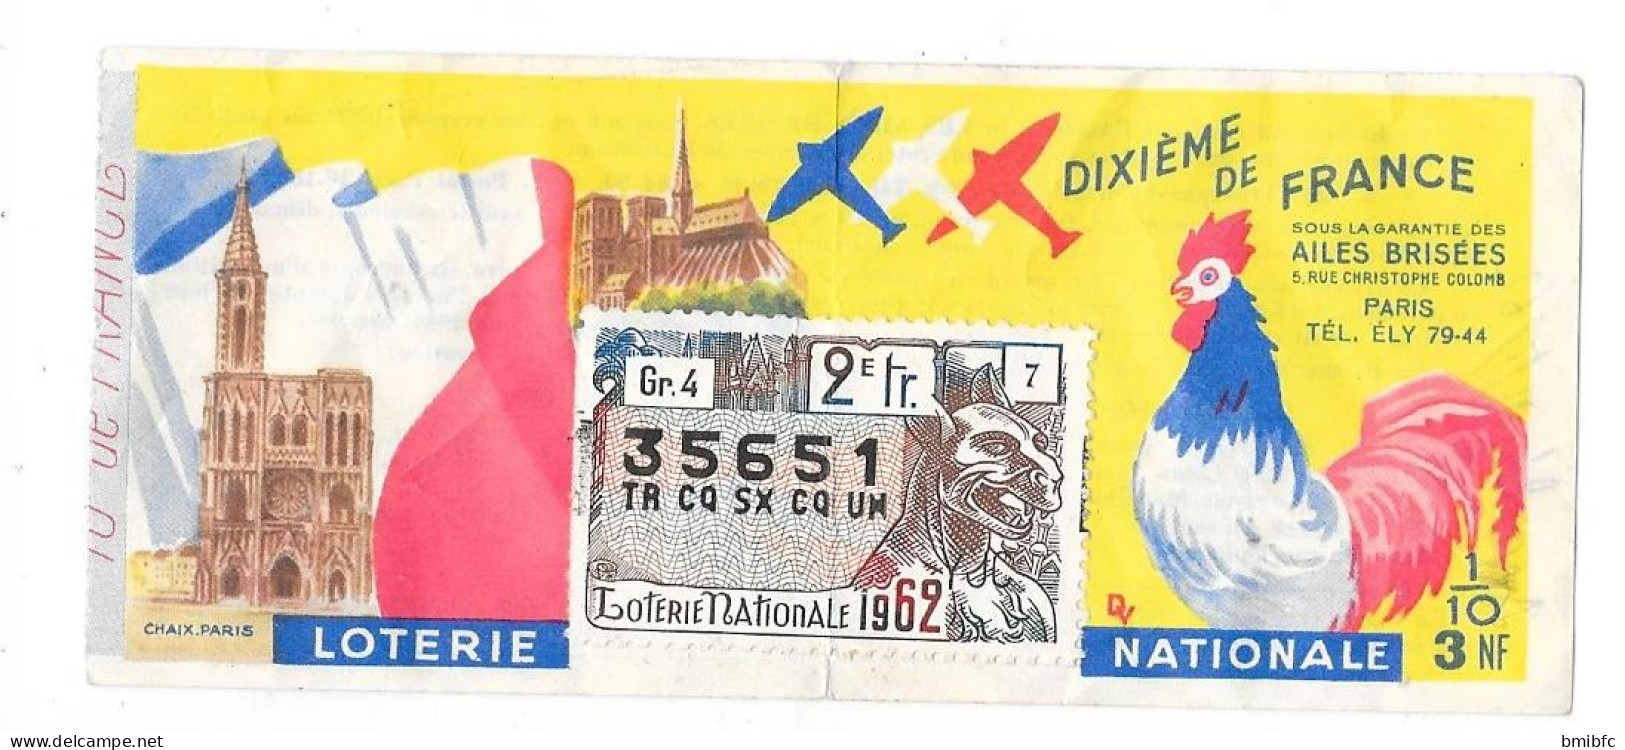 1962 - LOTERIE NATIONALE - DIXIÈME De FRANCE - N° 35651 - Billets De Loterie